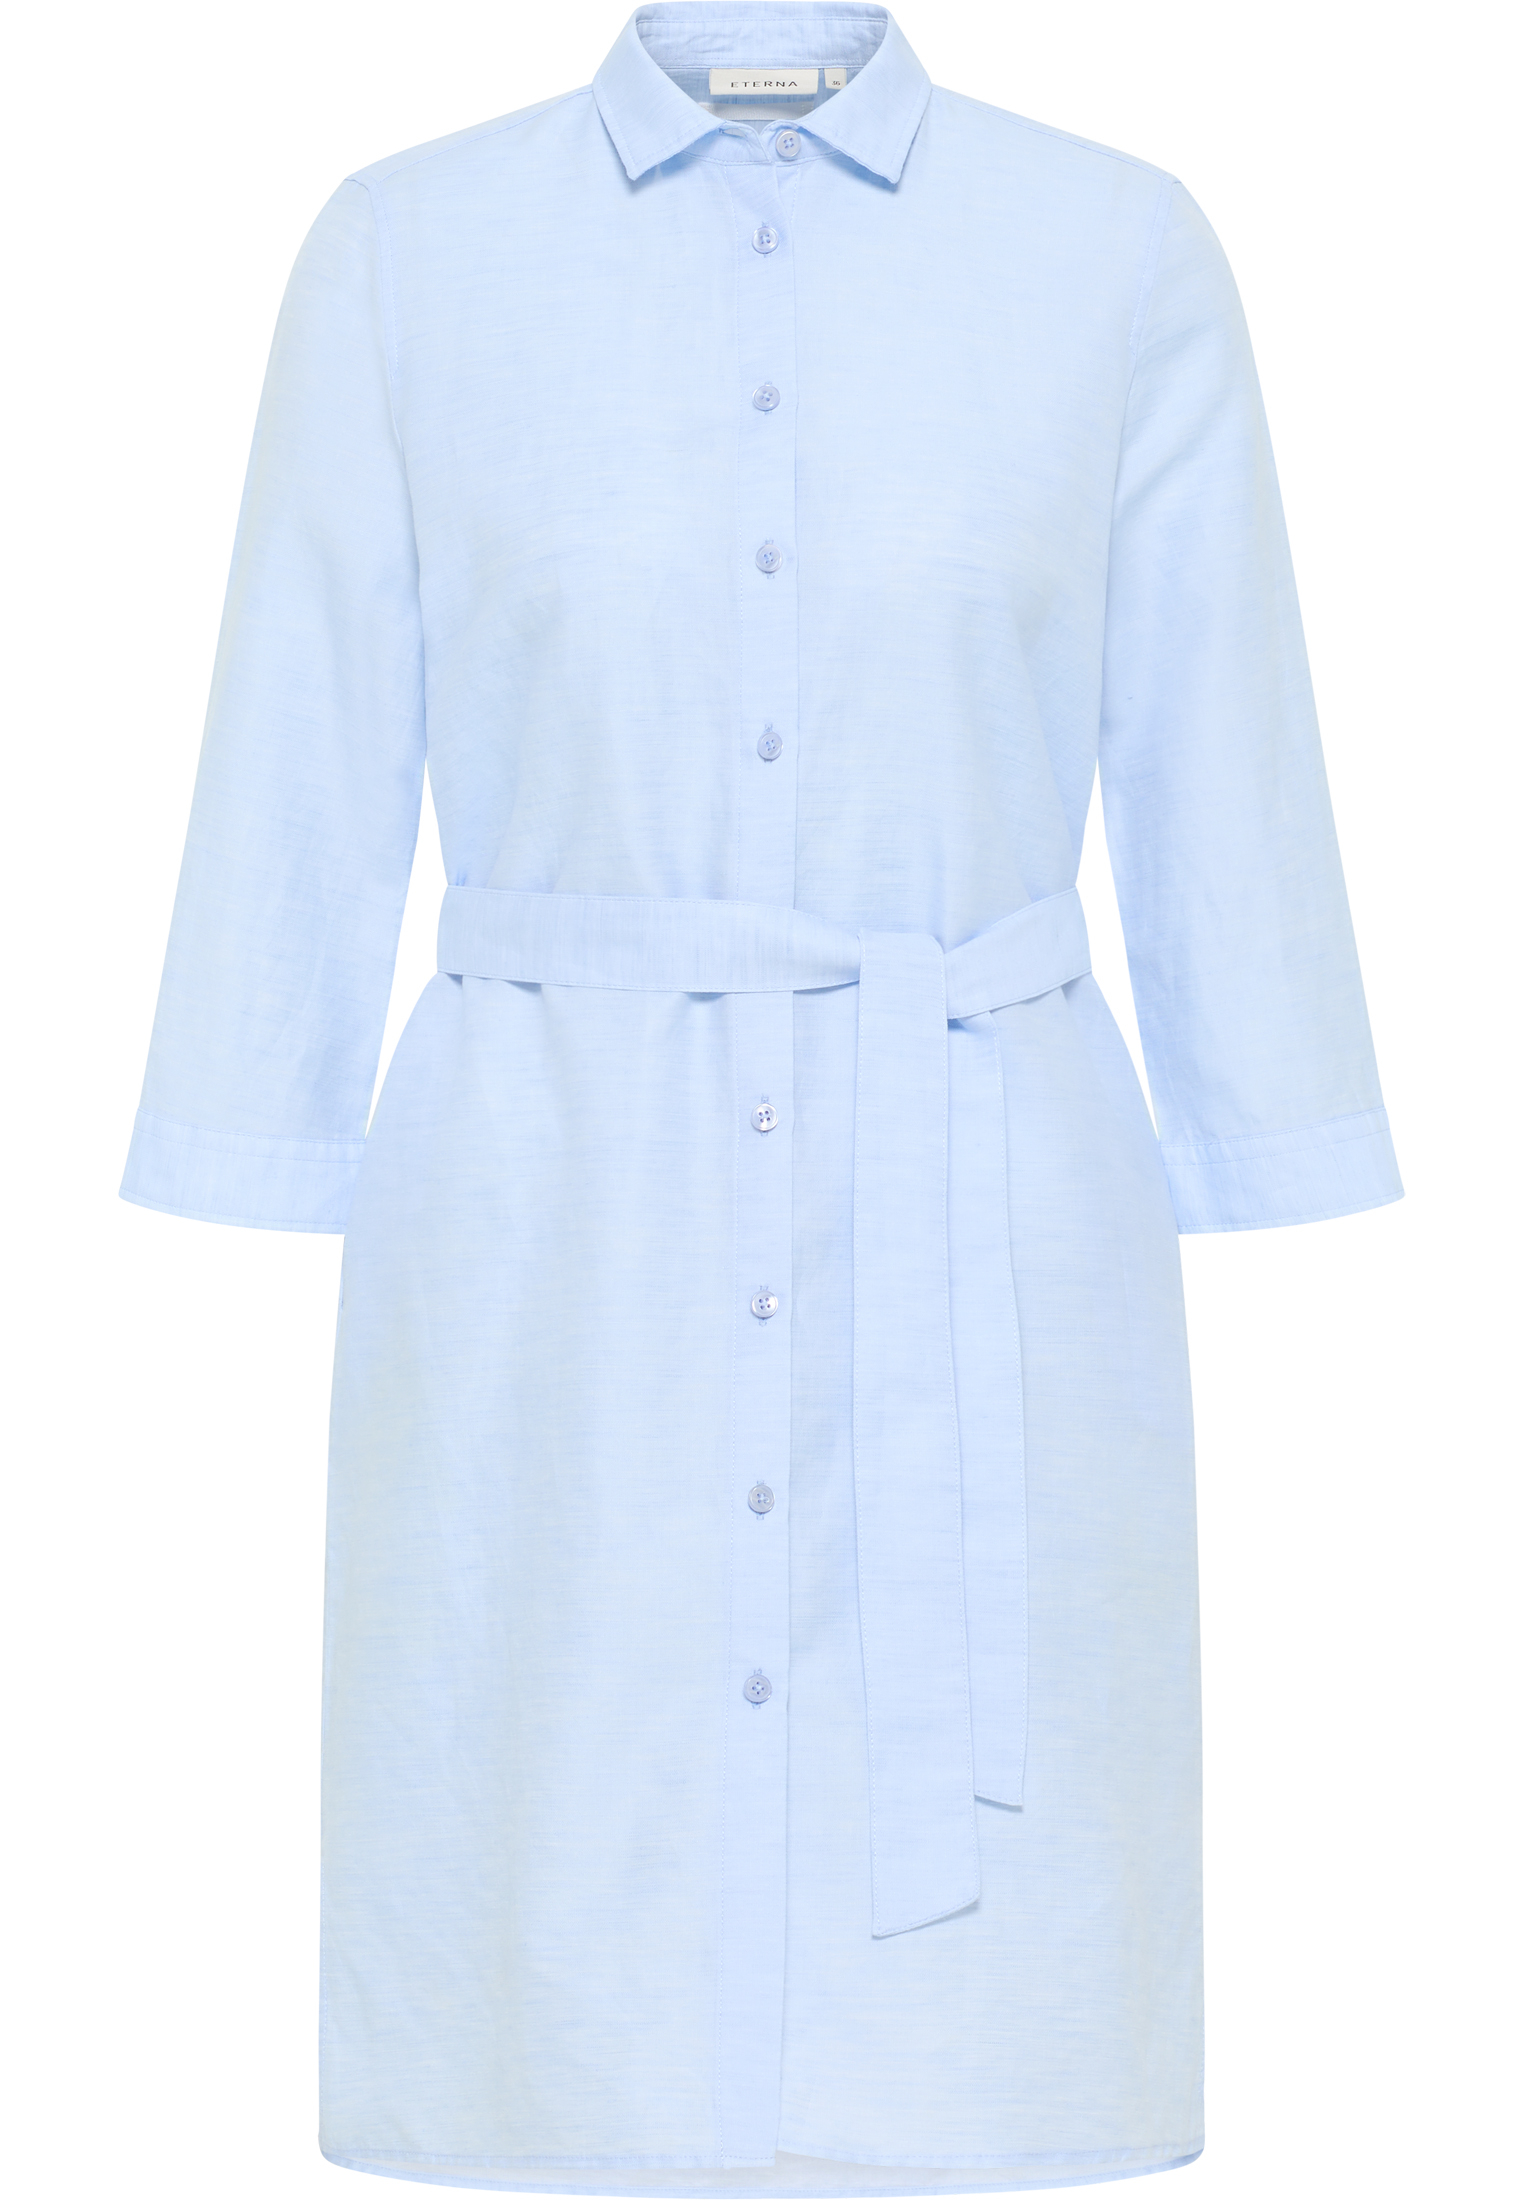 Linen Shirt Bluse in hellblau unifarben | hellblau | 46 | 3/4-Arm |  2DR00264-01-11-46-3/4